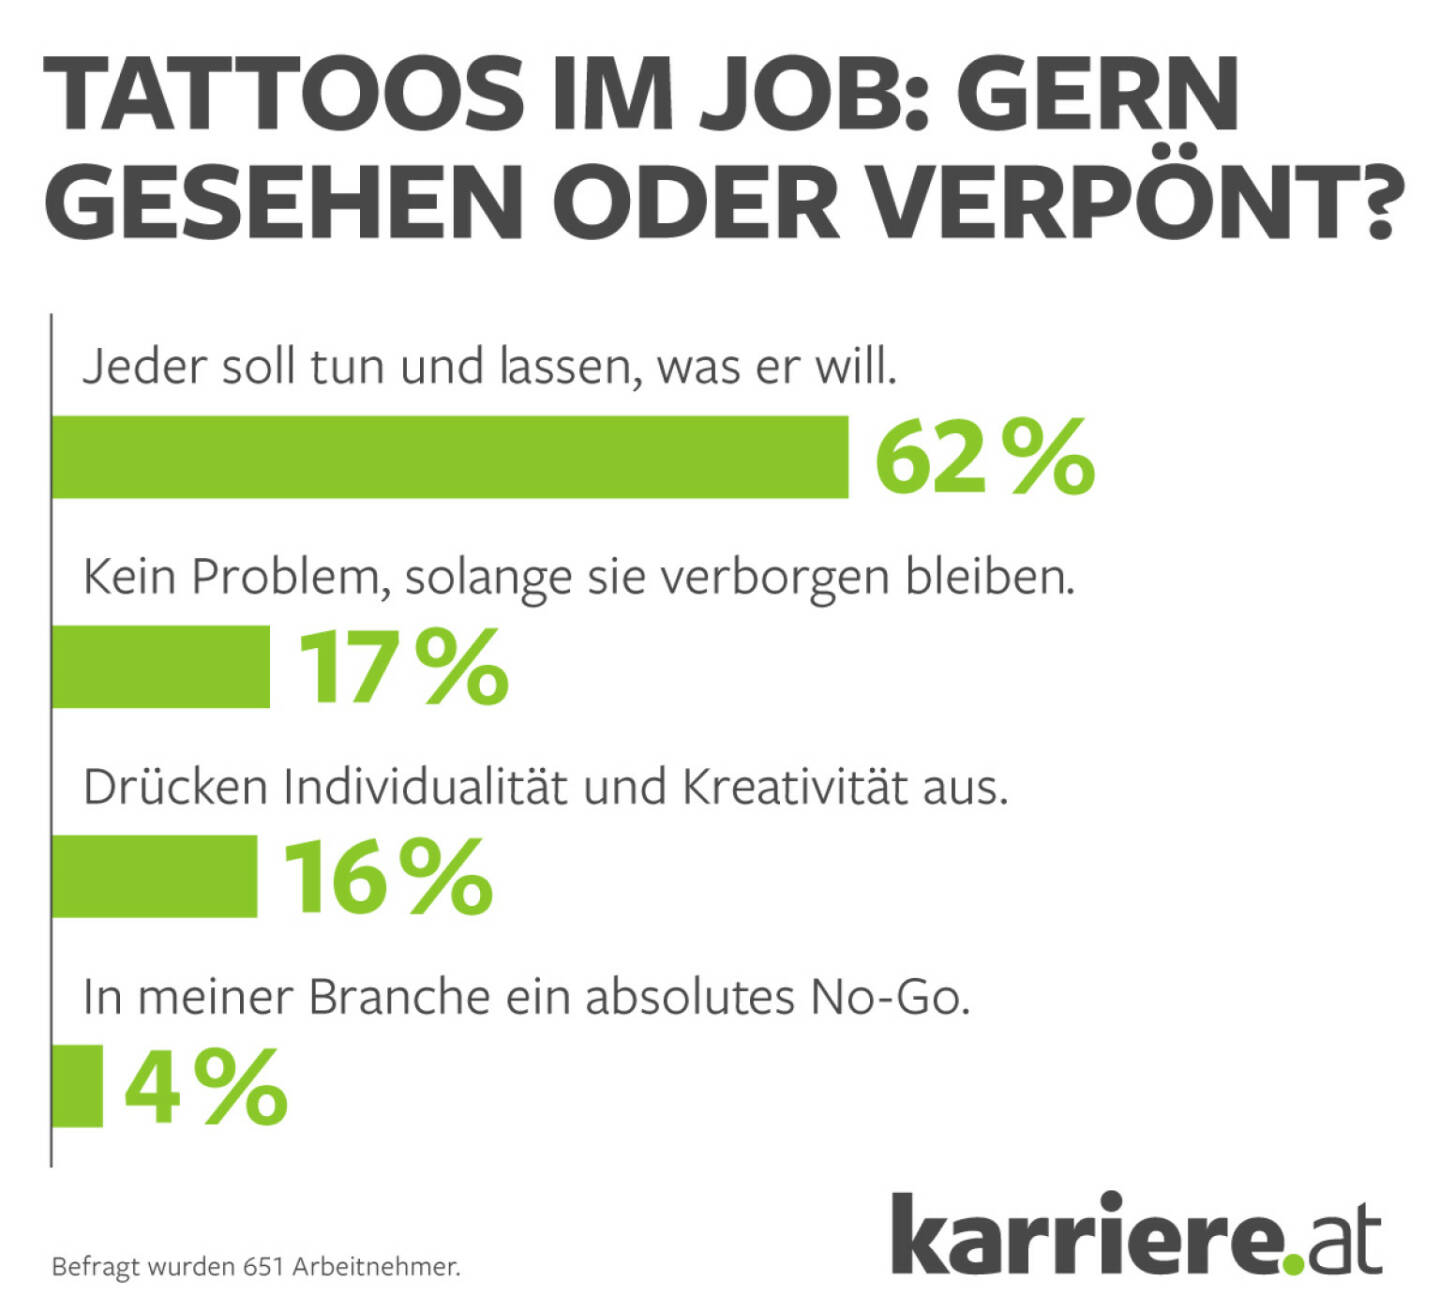 karriere.at GmbH: karriere.at Umfrage zu Tattoos: Österreichs Unternehmen längst kein Dorn mehr im Auge